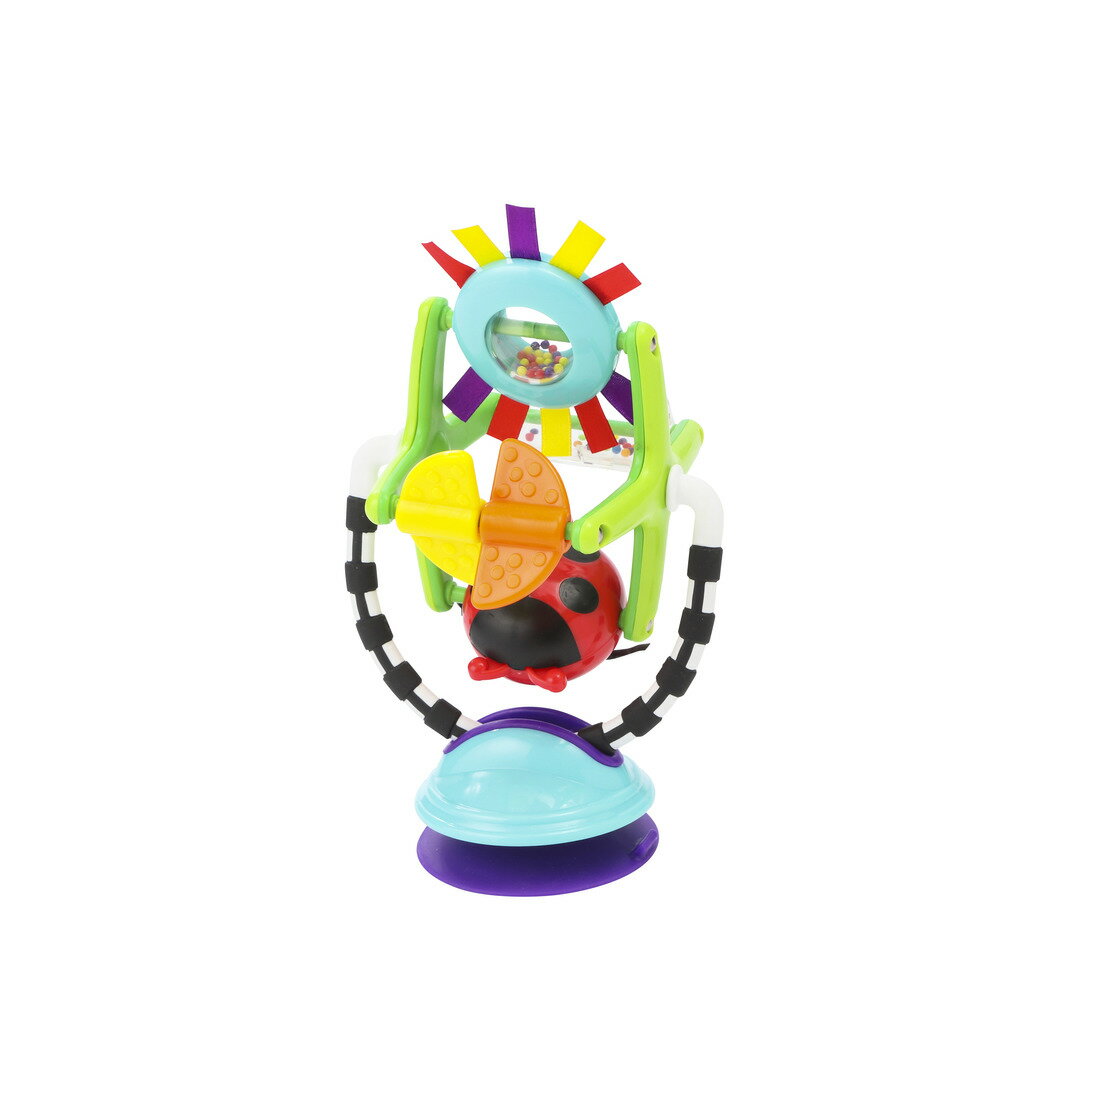 Sassy サッシー テーブルかんらんしゃ クリスマス プレゼント ギフト おもちゃ 赤ちゃん ベビー 男の子 女の子 知育 玩具 0歳 6ヶ月 8ヶ月 1歳 出産祝い ギフト プレゼント 知育玩具 ベビーカー